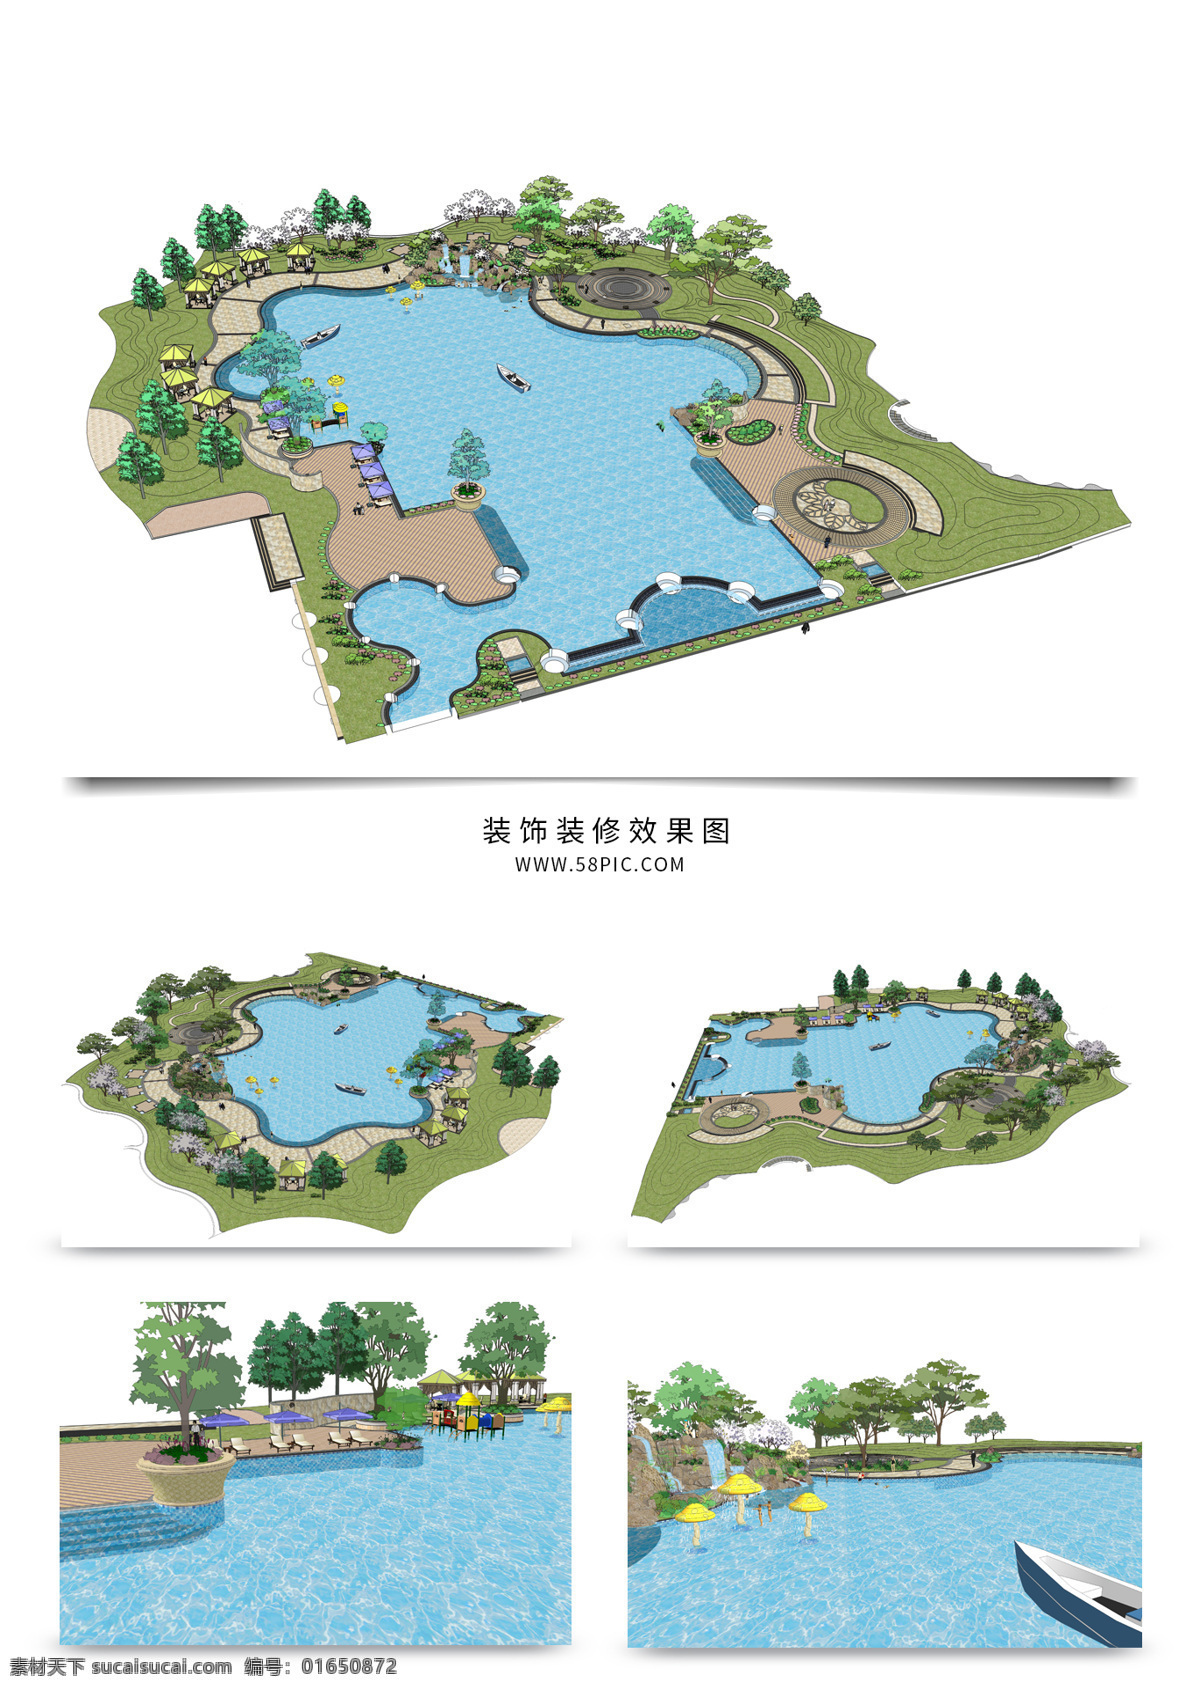 公园 湖 景观 规划 su 透视 模型 园林 sketchup 草图 大师 景观规划 建筑装饰 设计素材 景观规划设计